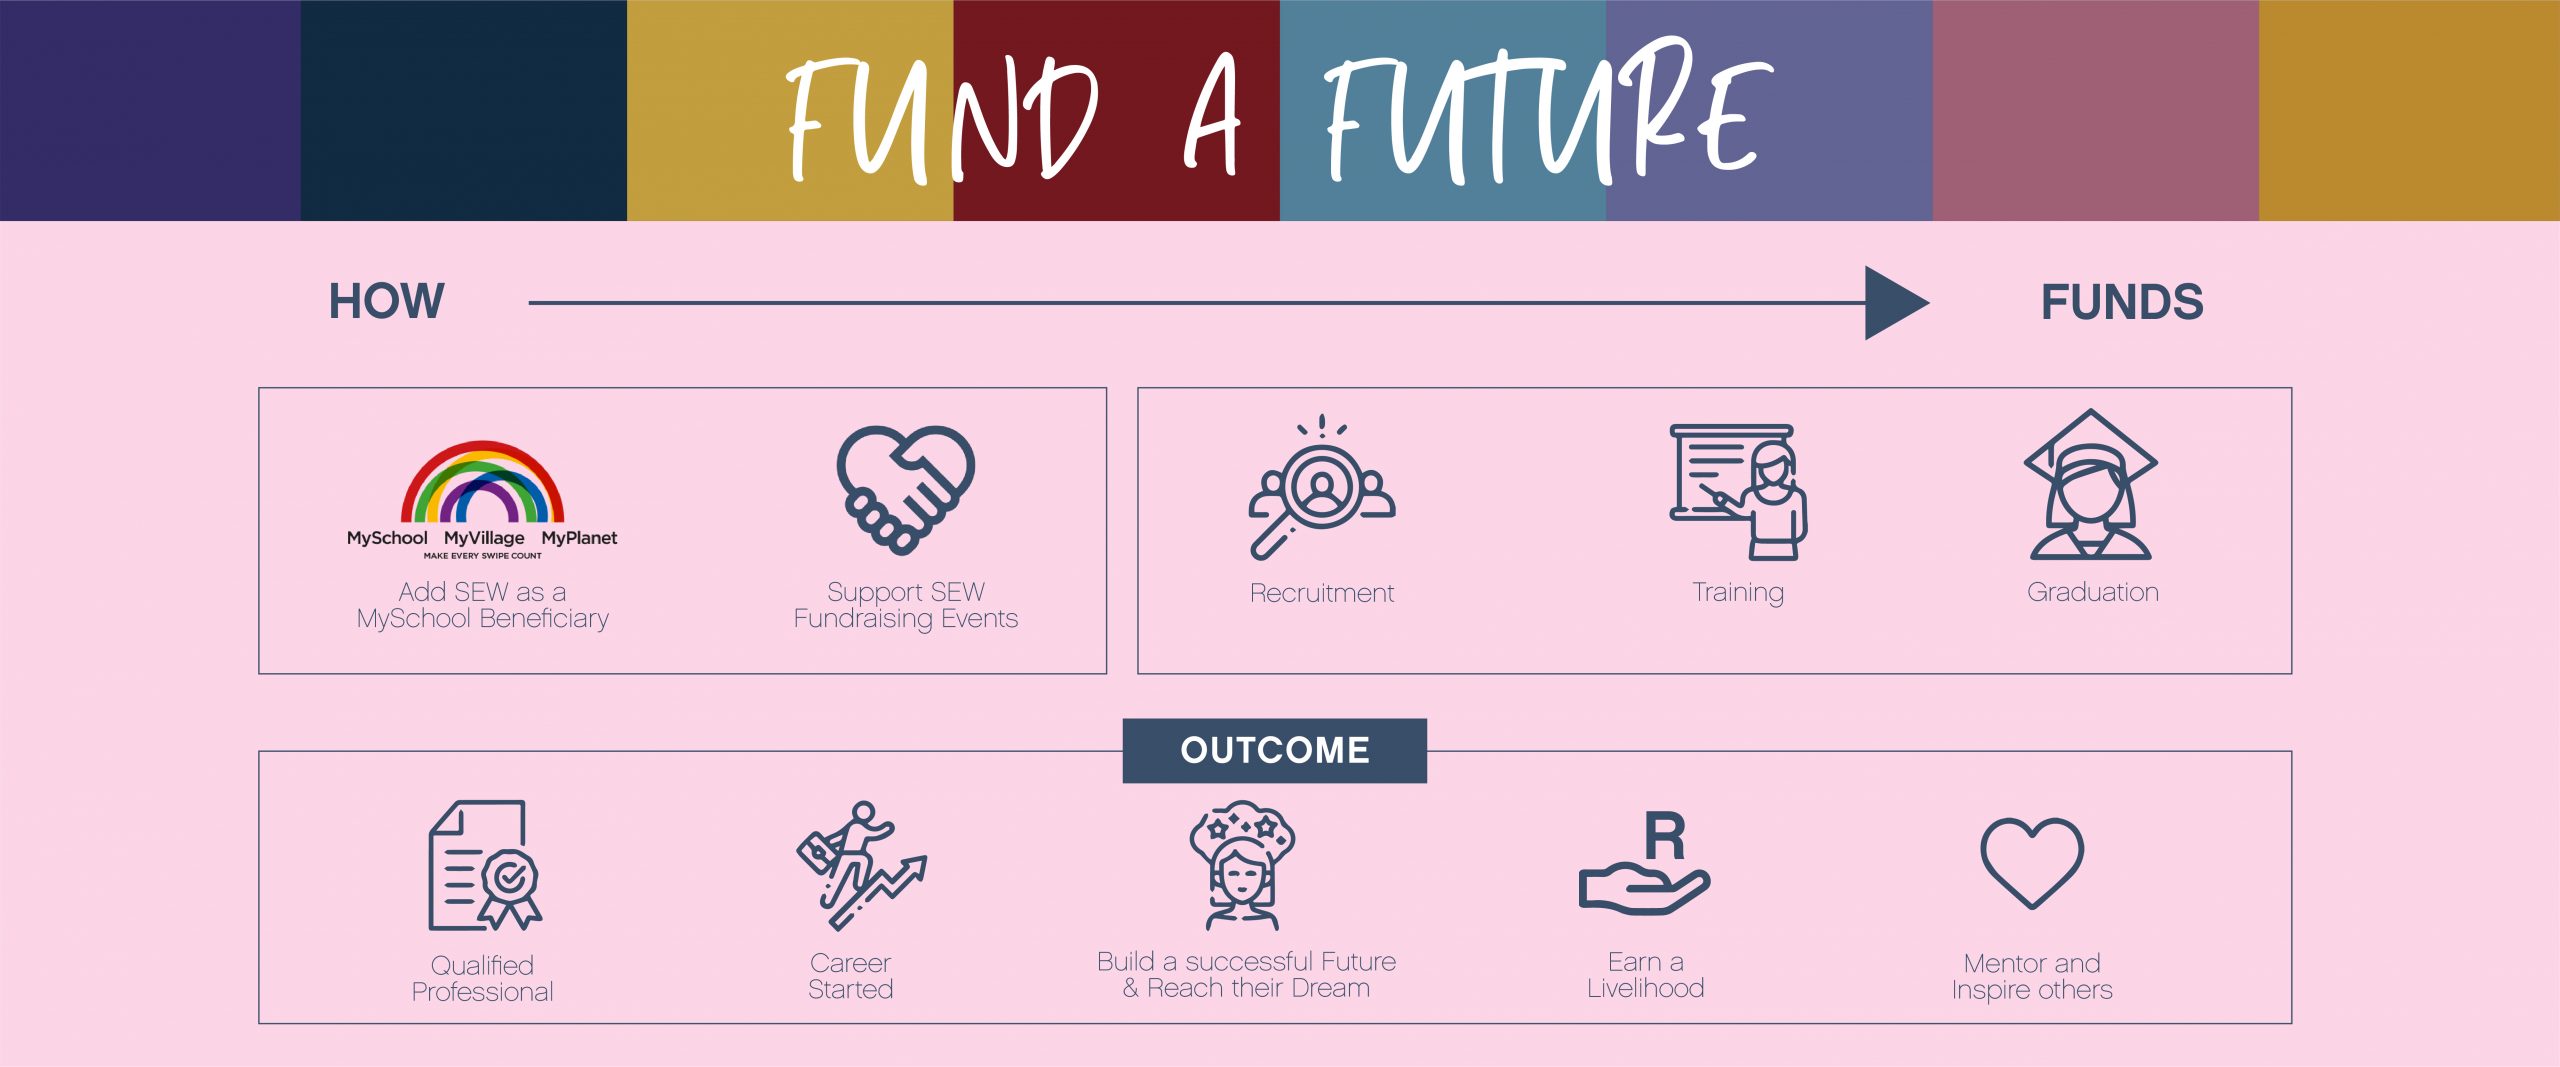 SEW Fund A Future